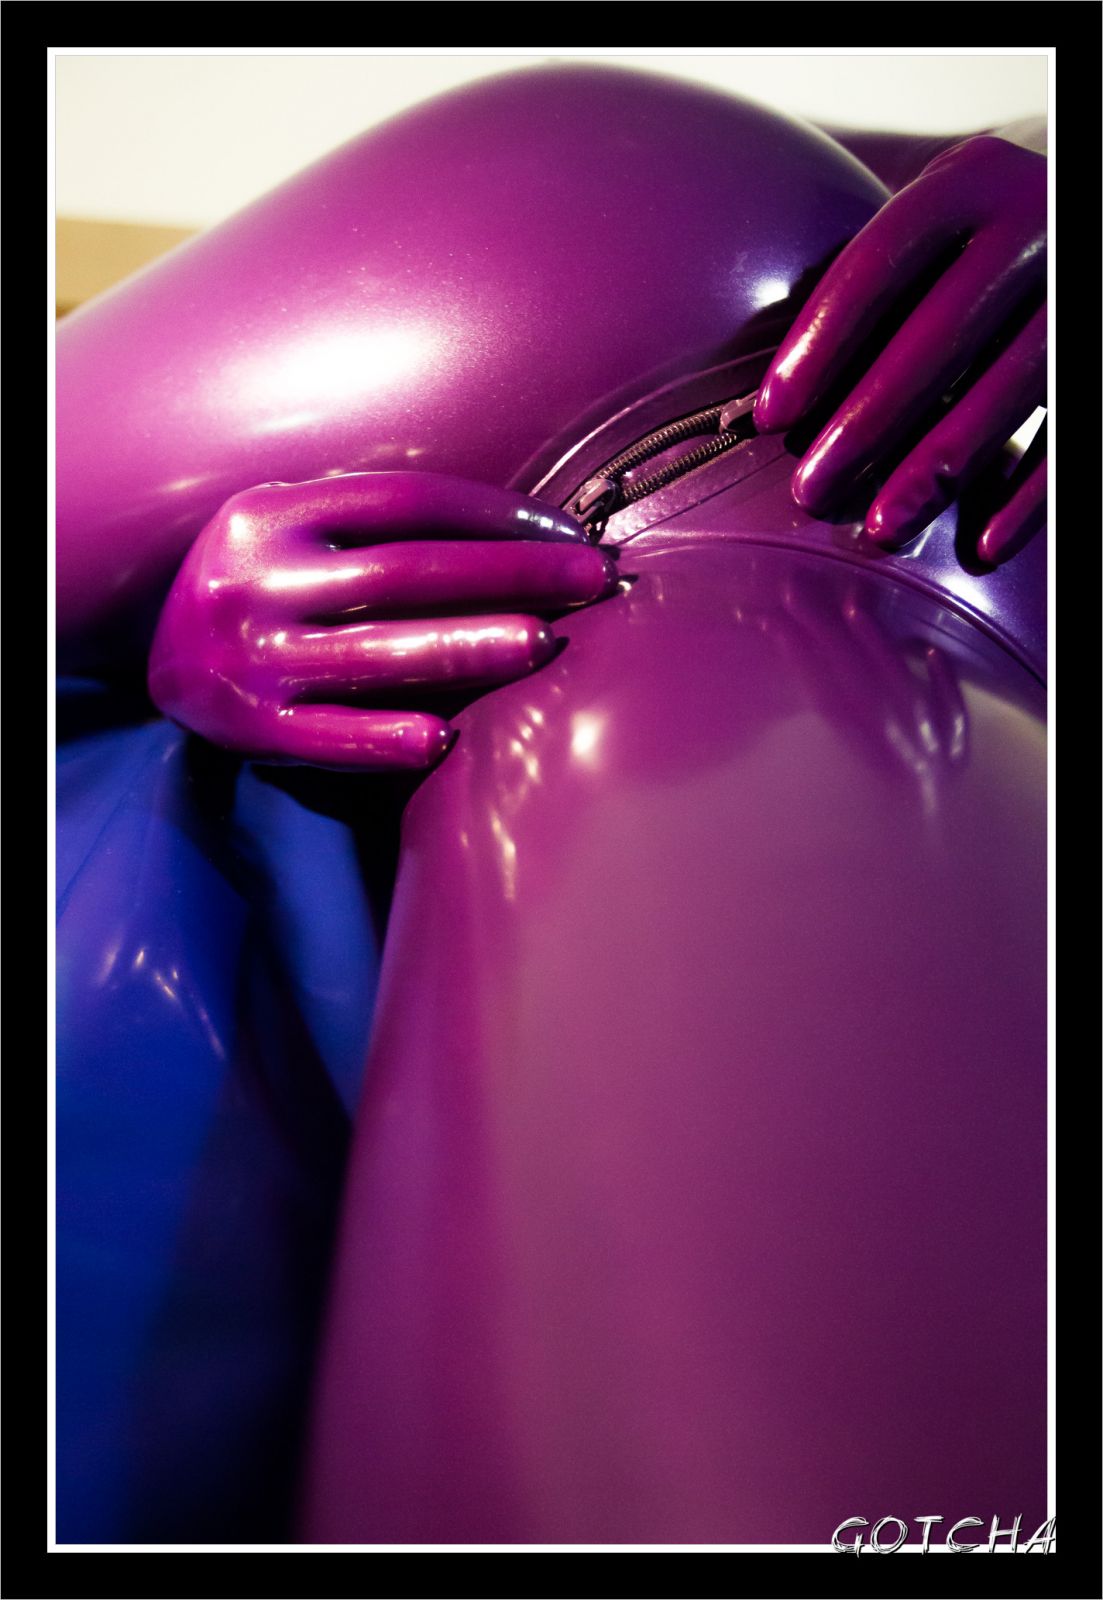 Moi en combi latex violette
Photographié par Gotcha
Mots-clés: latex catsuit